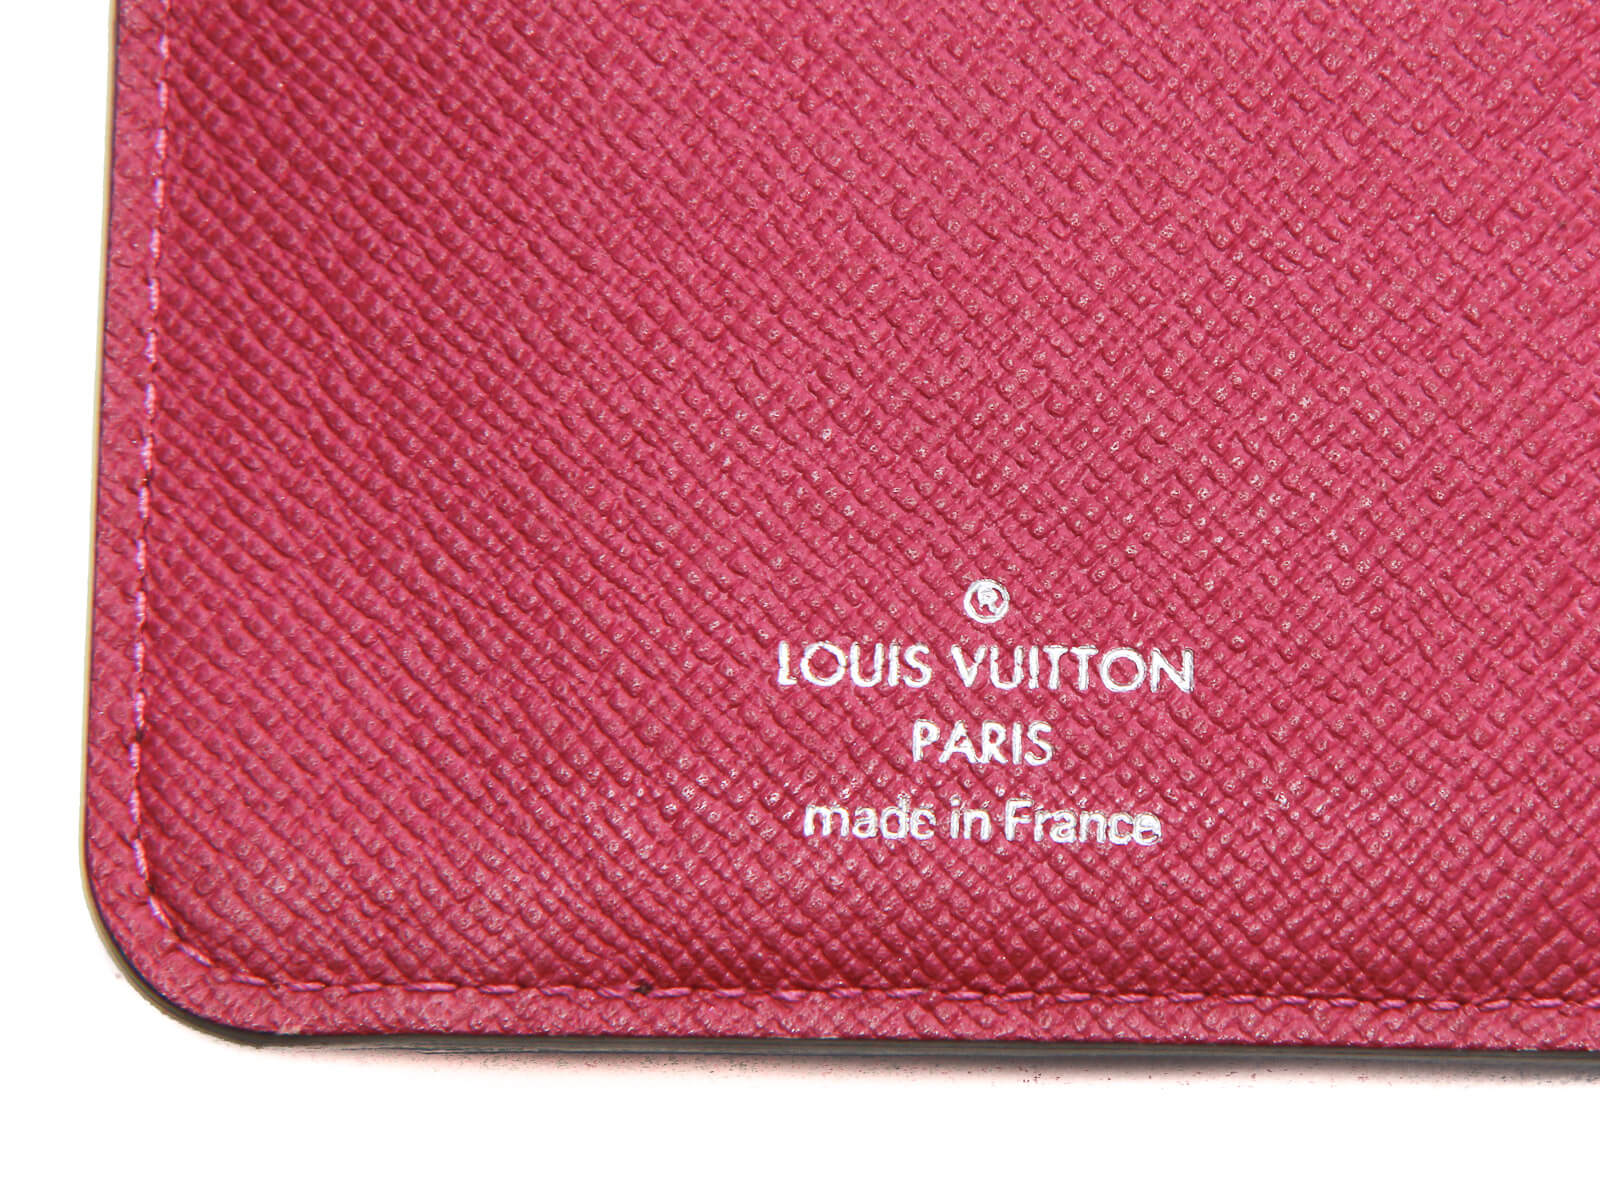 AUTHENTIC Louis Vuitton PARIS WALLET